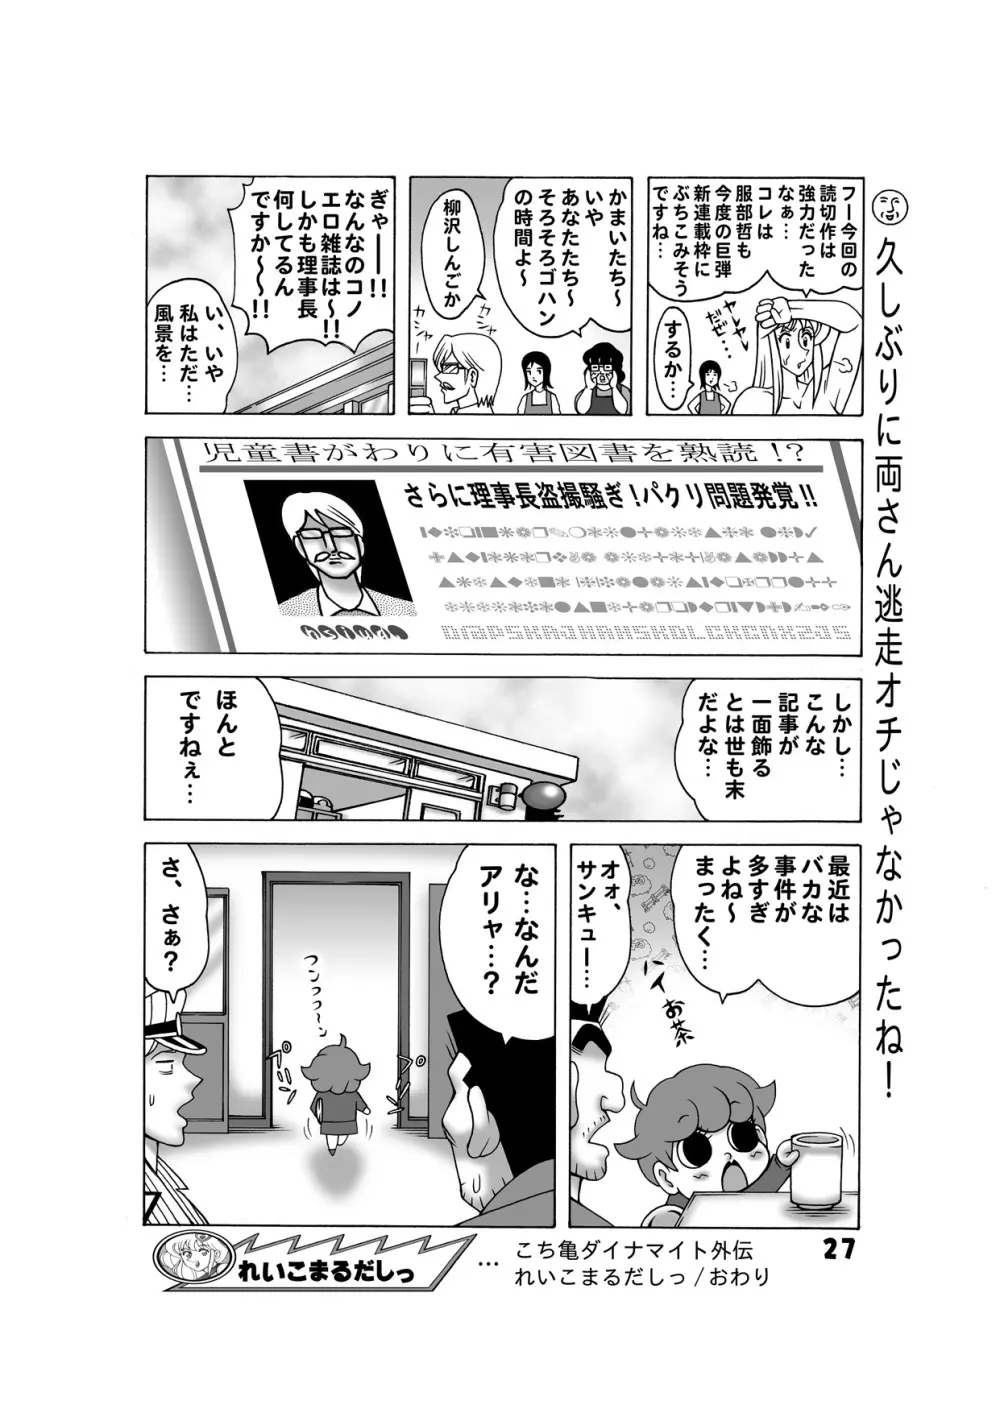 毎月こち亀ダイナマイト vol.5 - page27